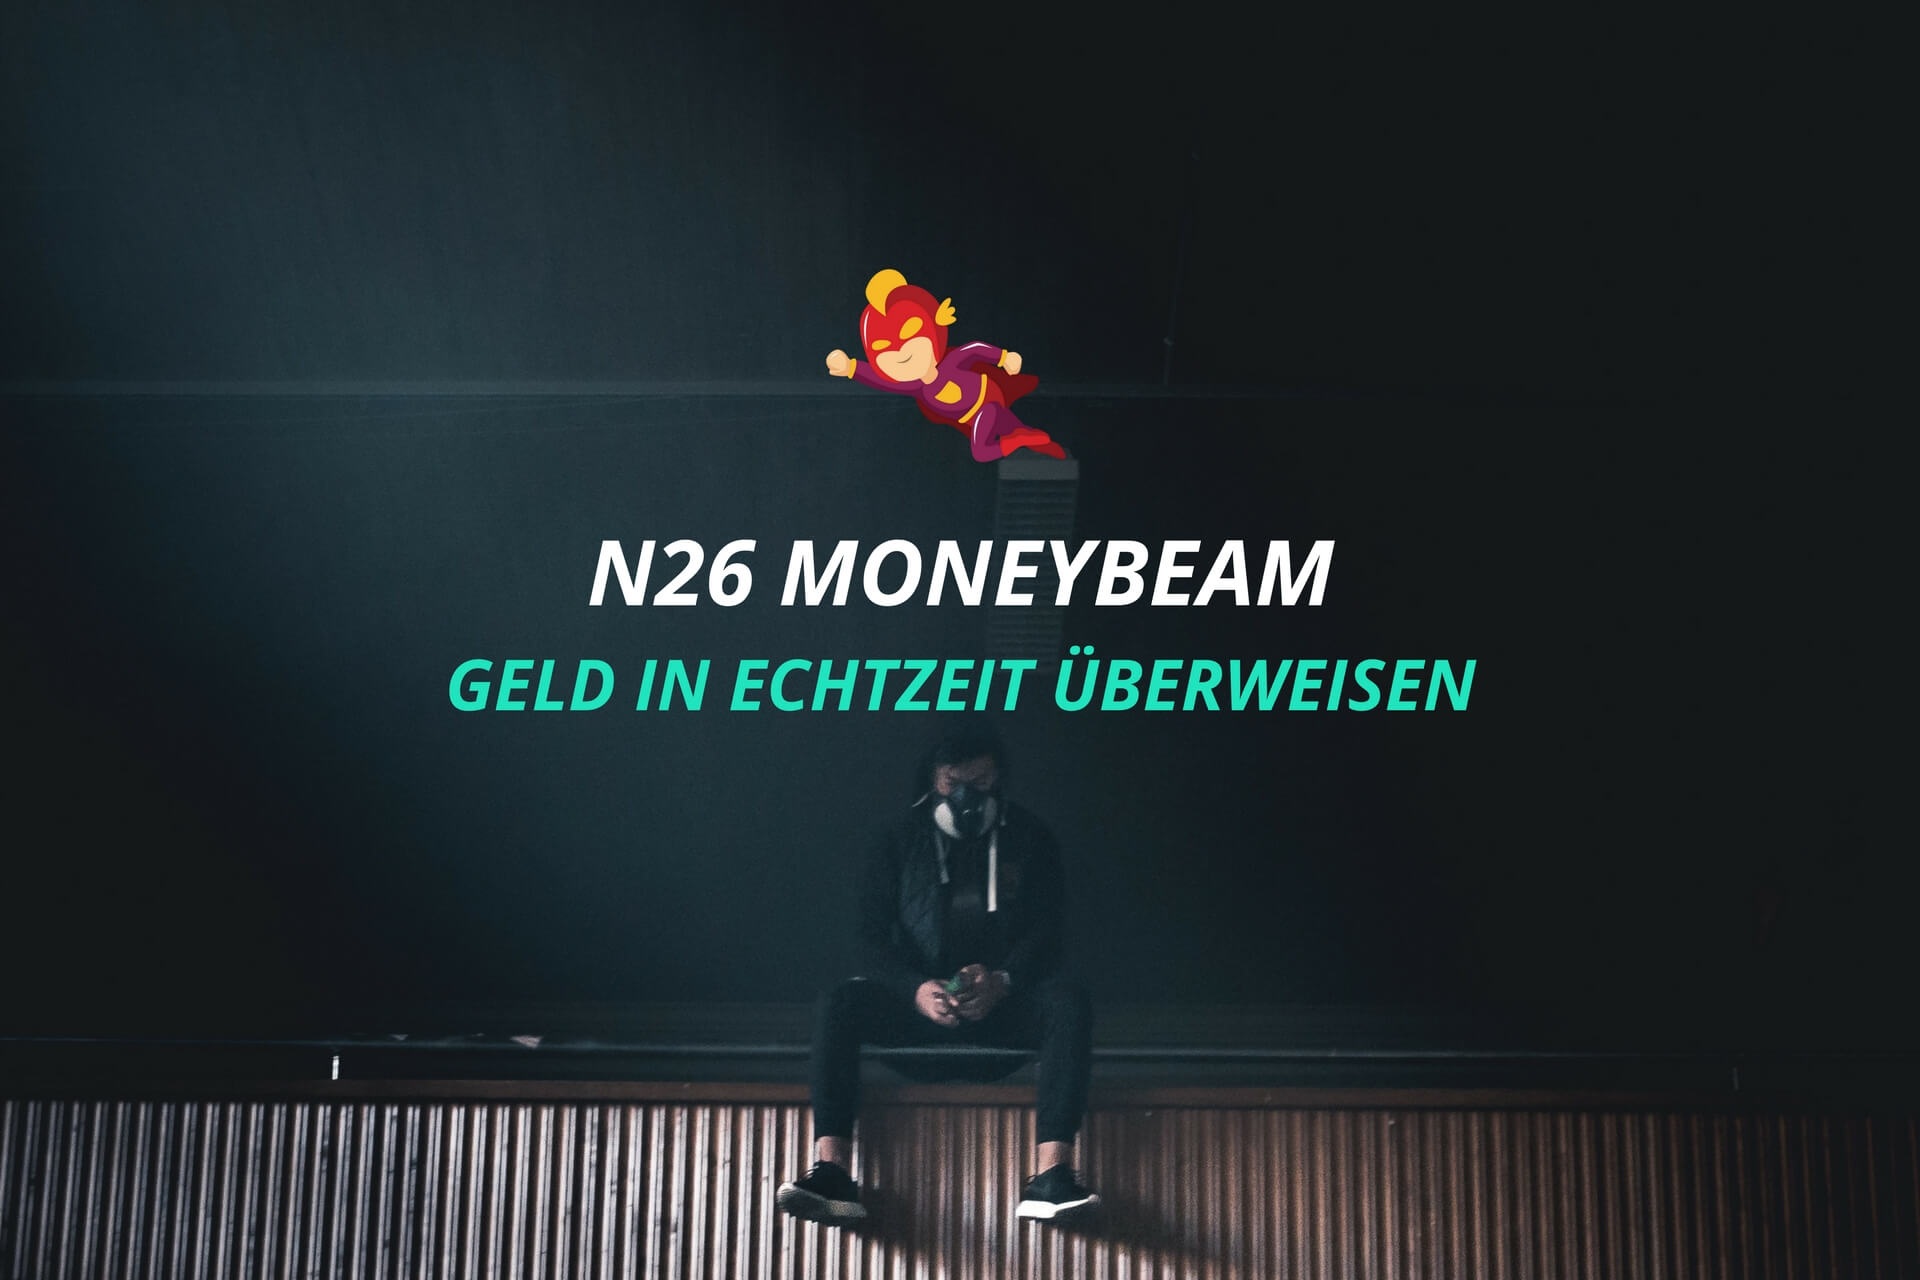 N26 MoneyBeam - Echtzeitüberweisung - Finanzhelden.org